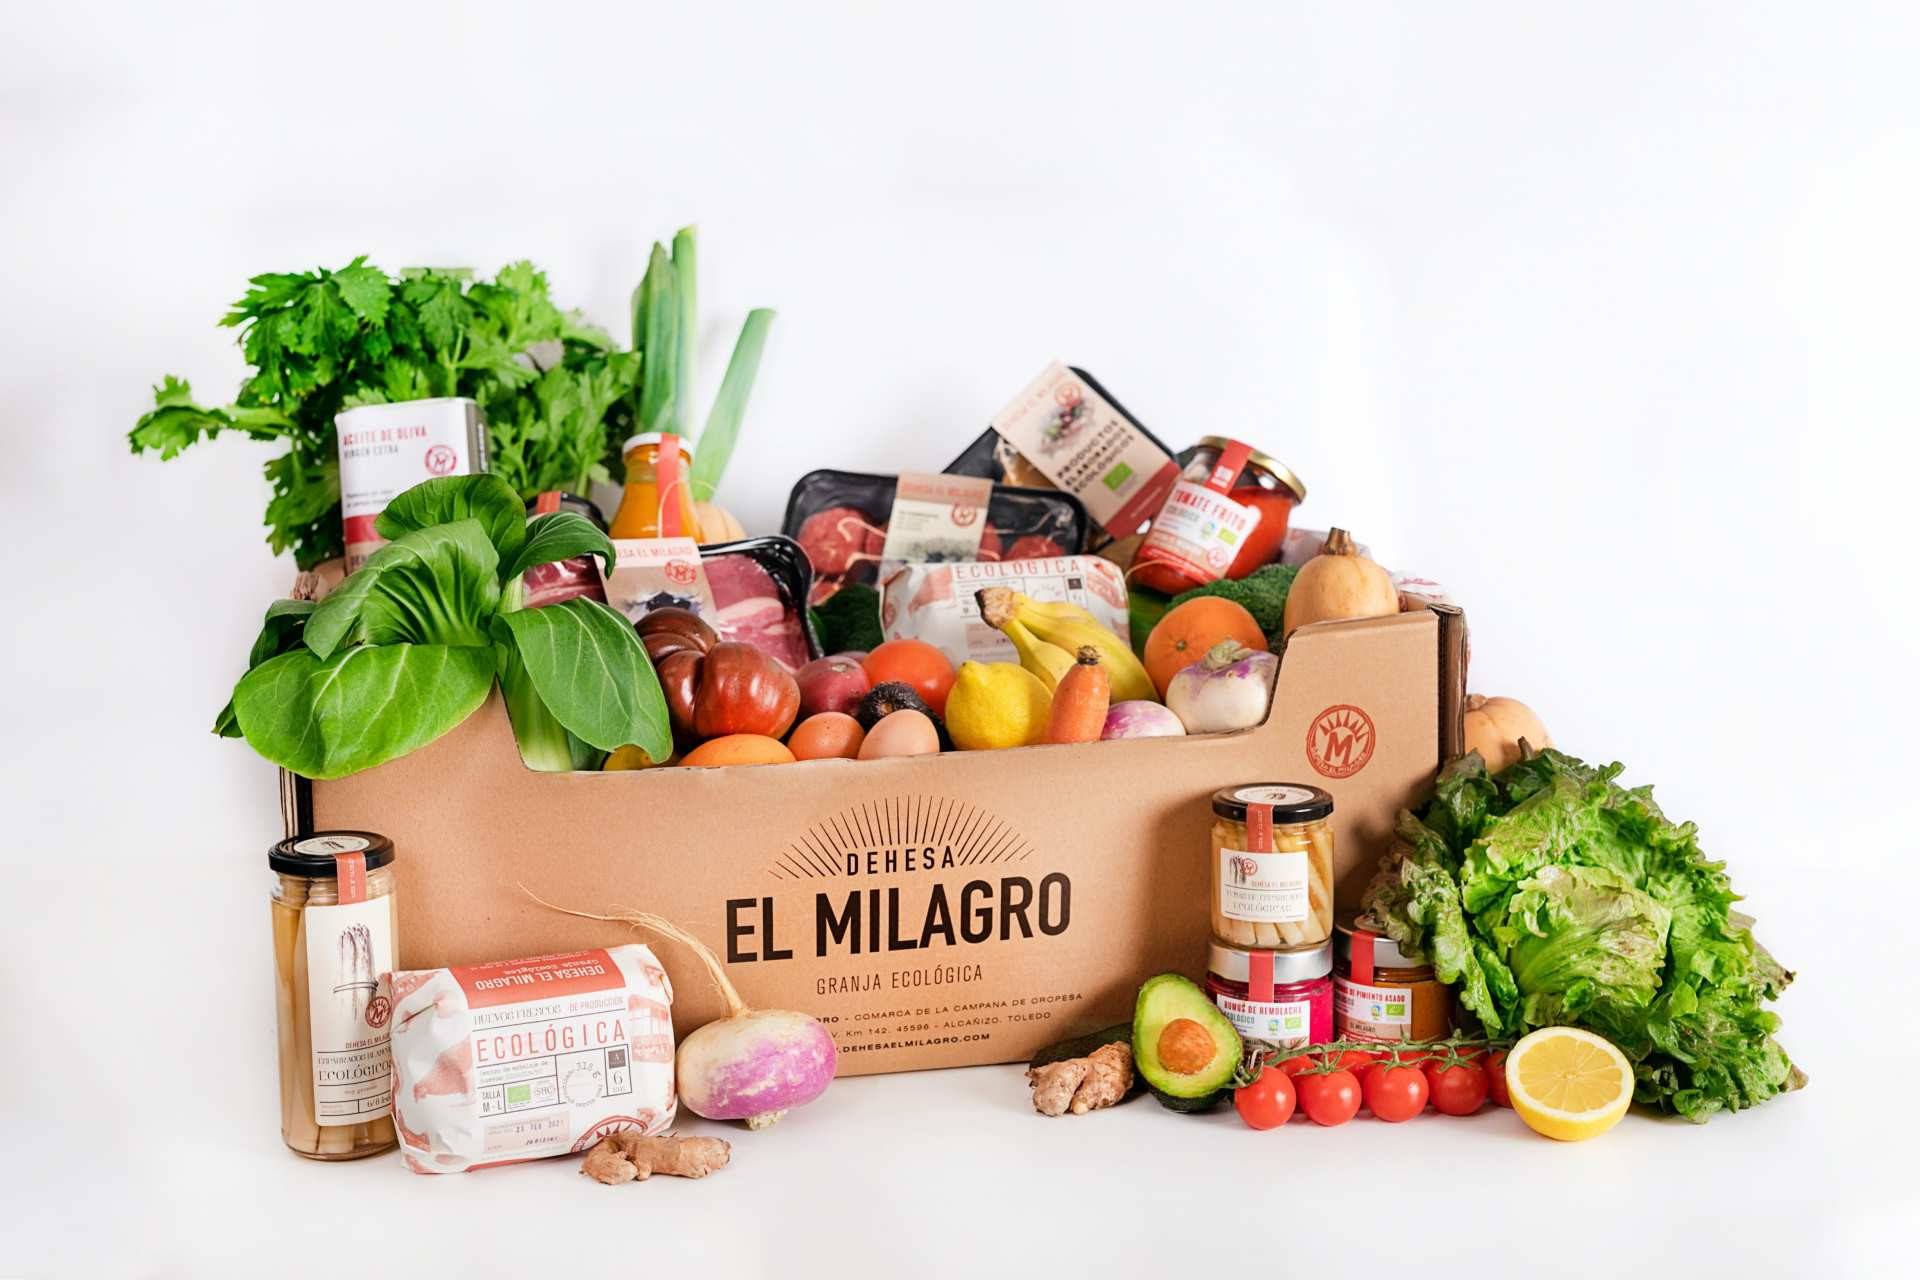 Las cestas de Dehesa El Milagro llenas de productos eco, sanos y muy sabrosos.